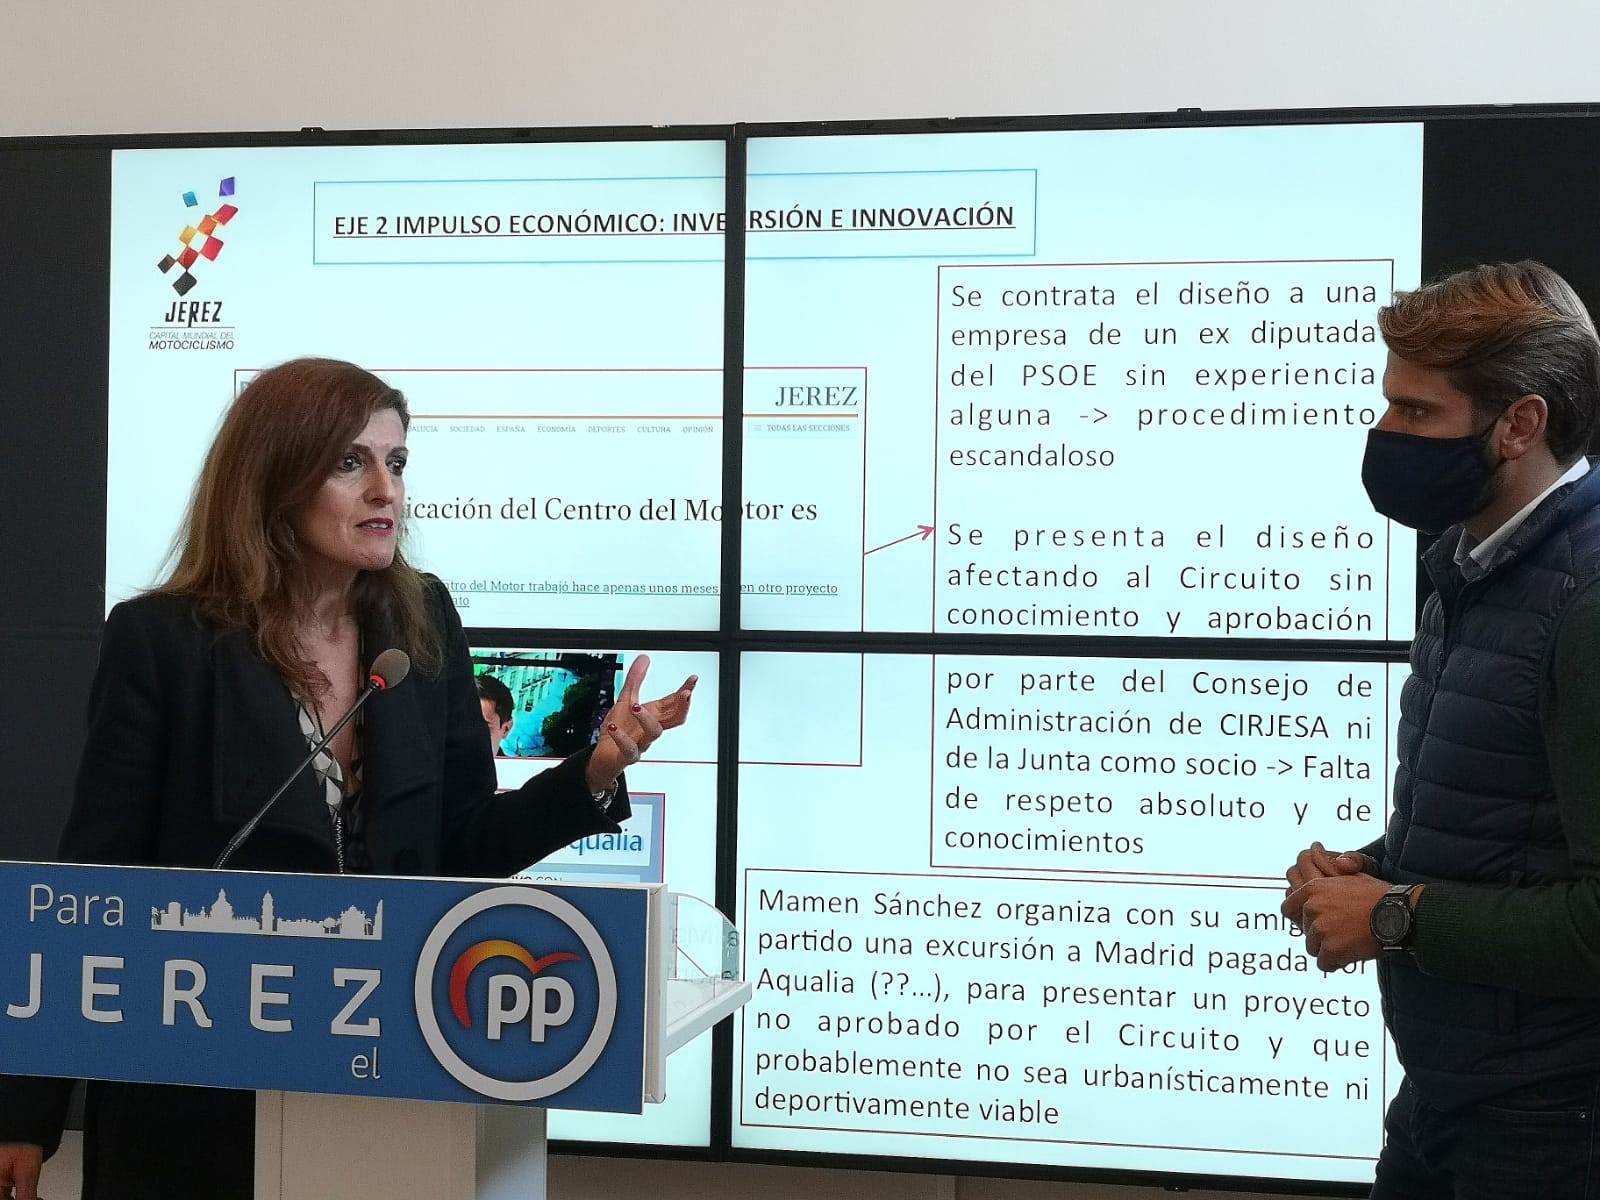 Nausika Botamino, junto a Rafael Mateos. El PP acusa a Mamen Sánchez de "tirar dinero público".